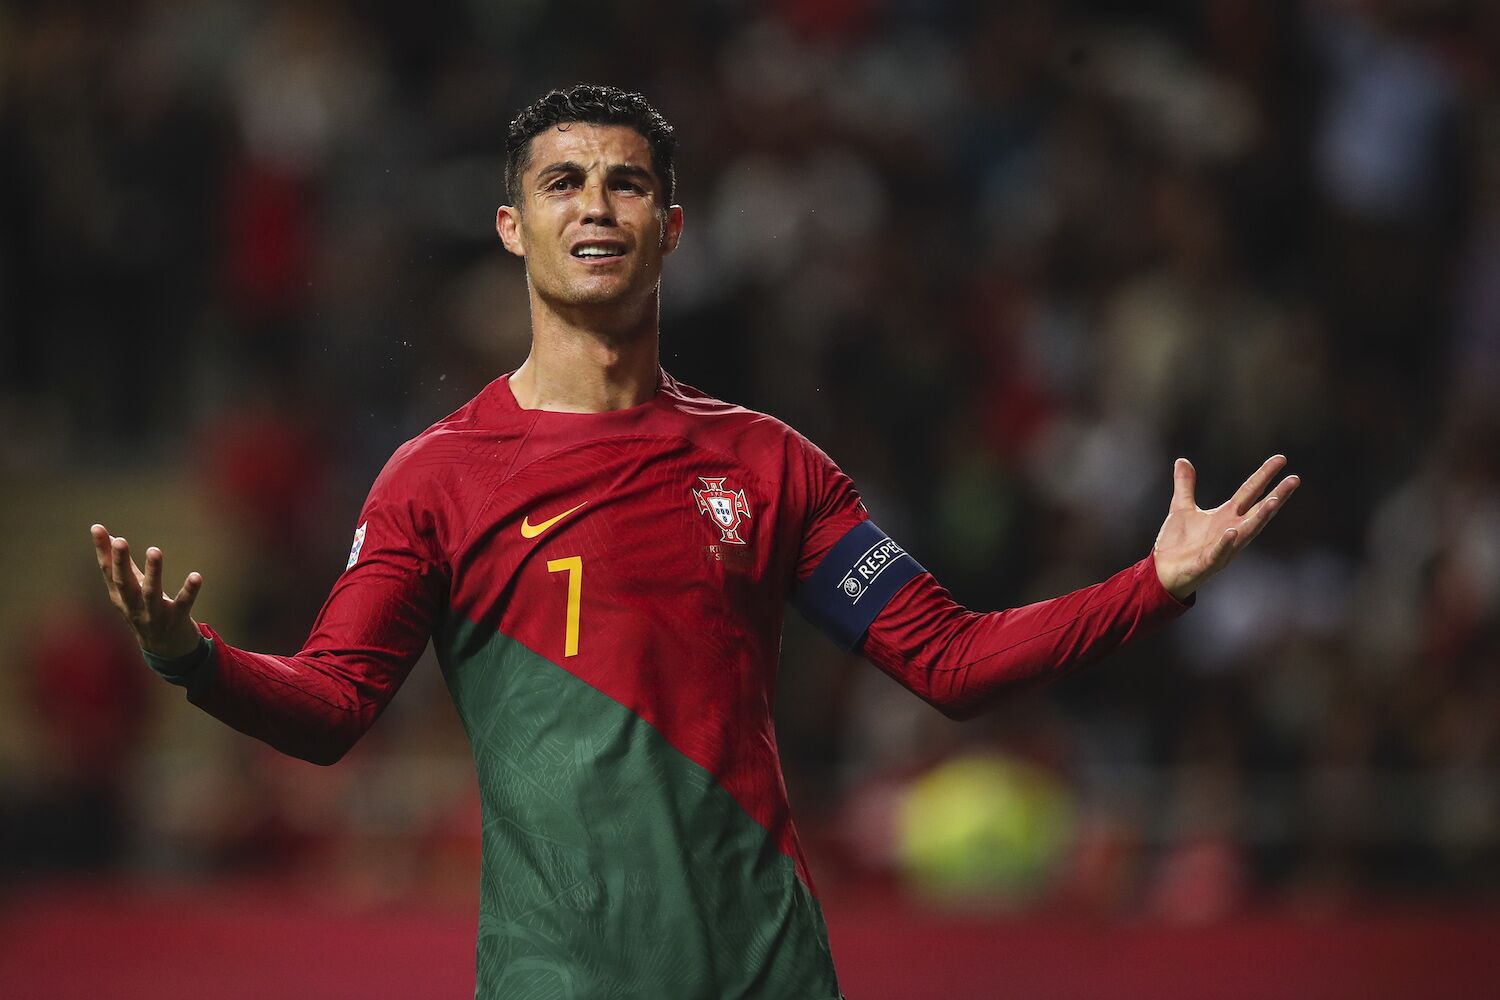 Ronaldo chega aos 200 jogos e garante que nunca abdicará da seleção